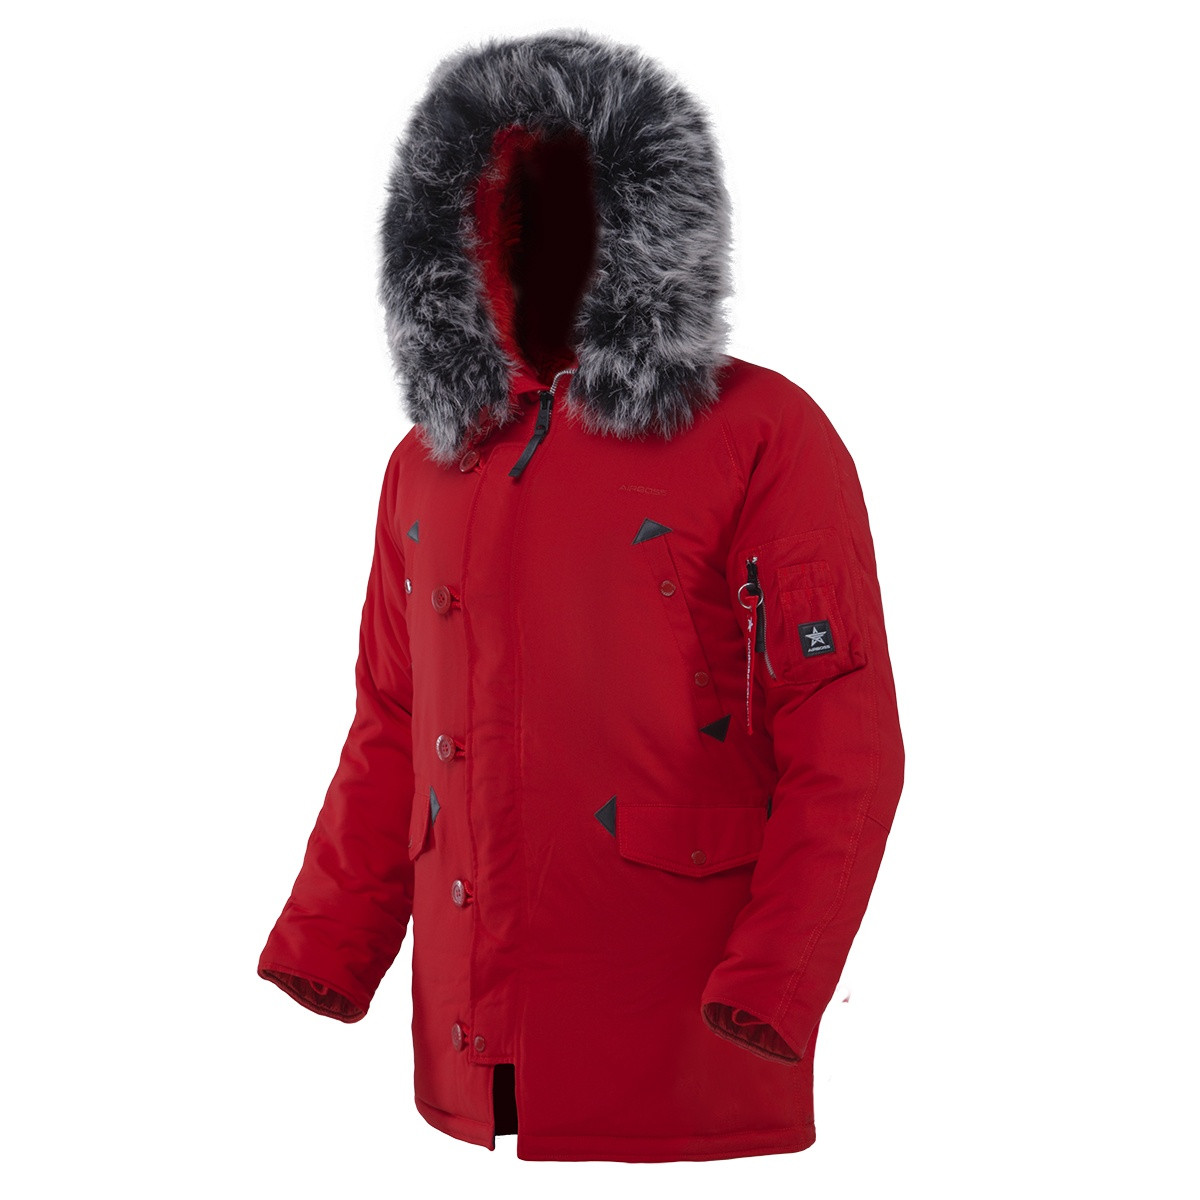 Мужская куртка аляска Airboss Snorkel Parka  (красная)